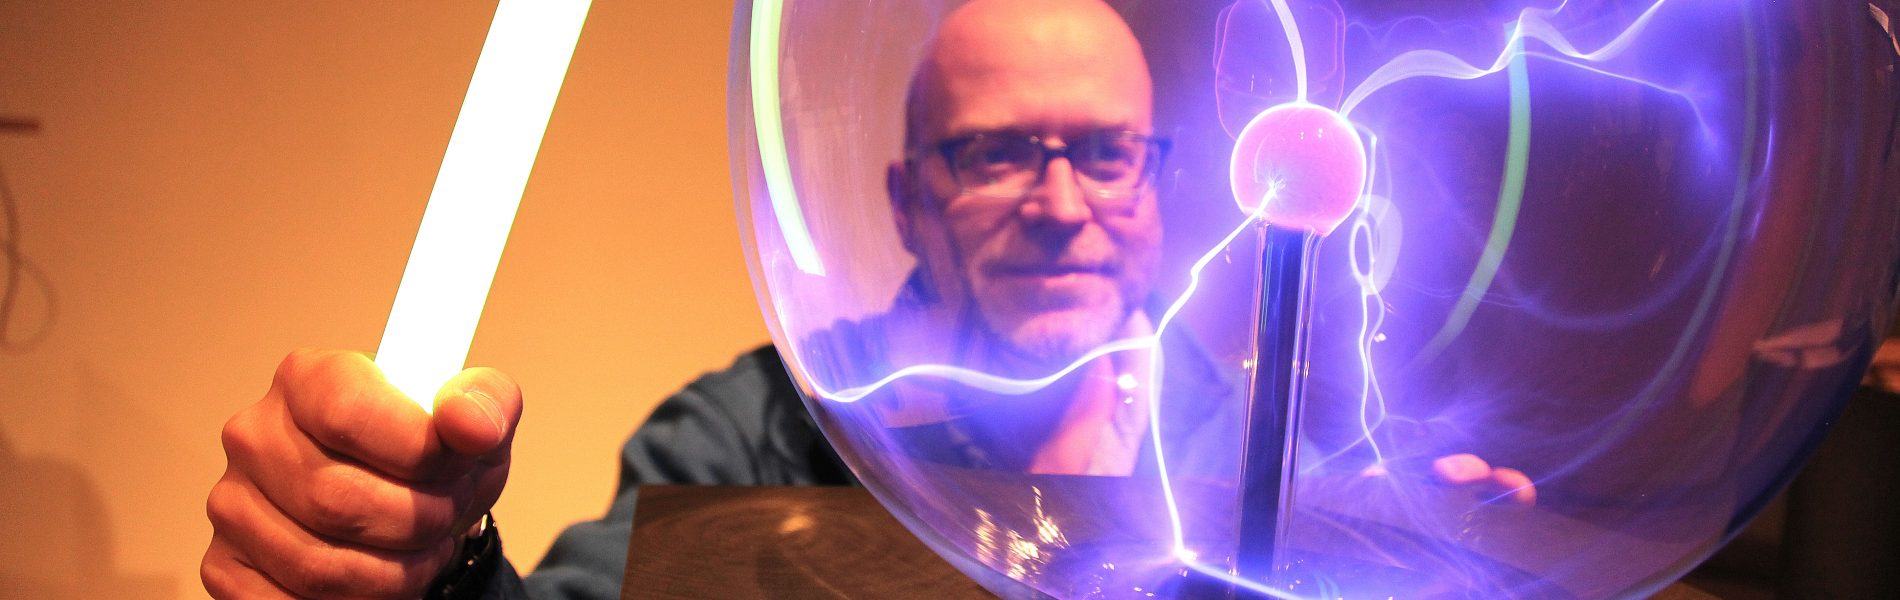 Das Bild zeigt einen Mann vor einer Plasmakugel. Die gläserne Kugel ist von der Mitte zum Rand mit kleinen, lilanen Blitzen durchzogen.